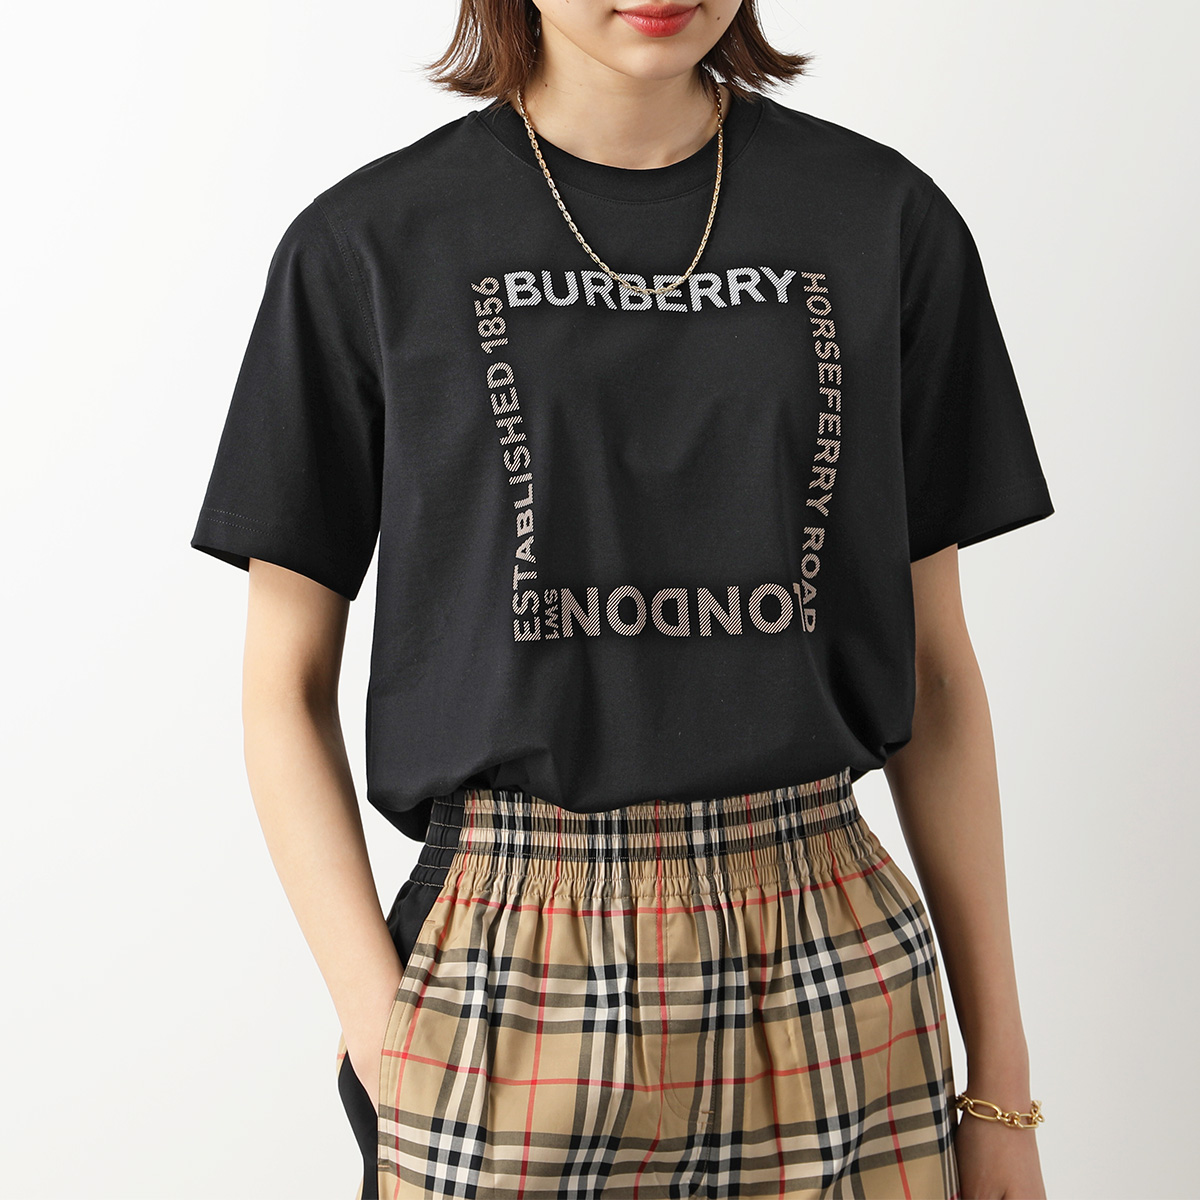 直送商品 新品 BURBERRY 8056048 A1189 半袖 プリントTシャツ S T